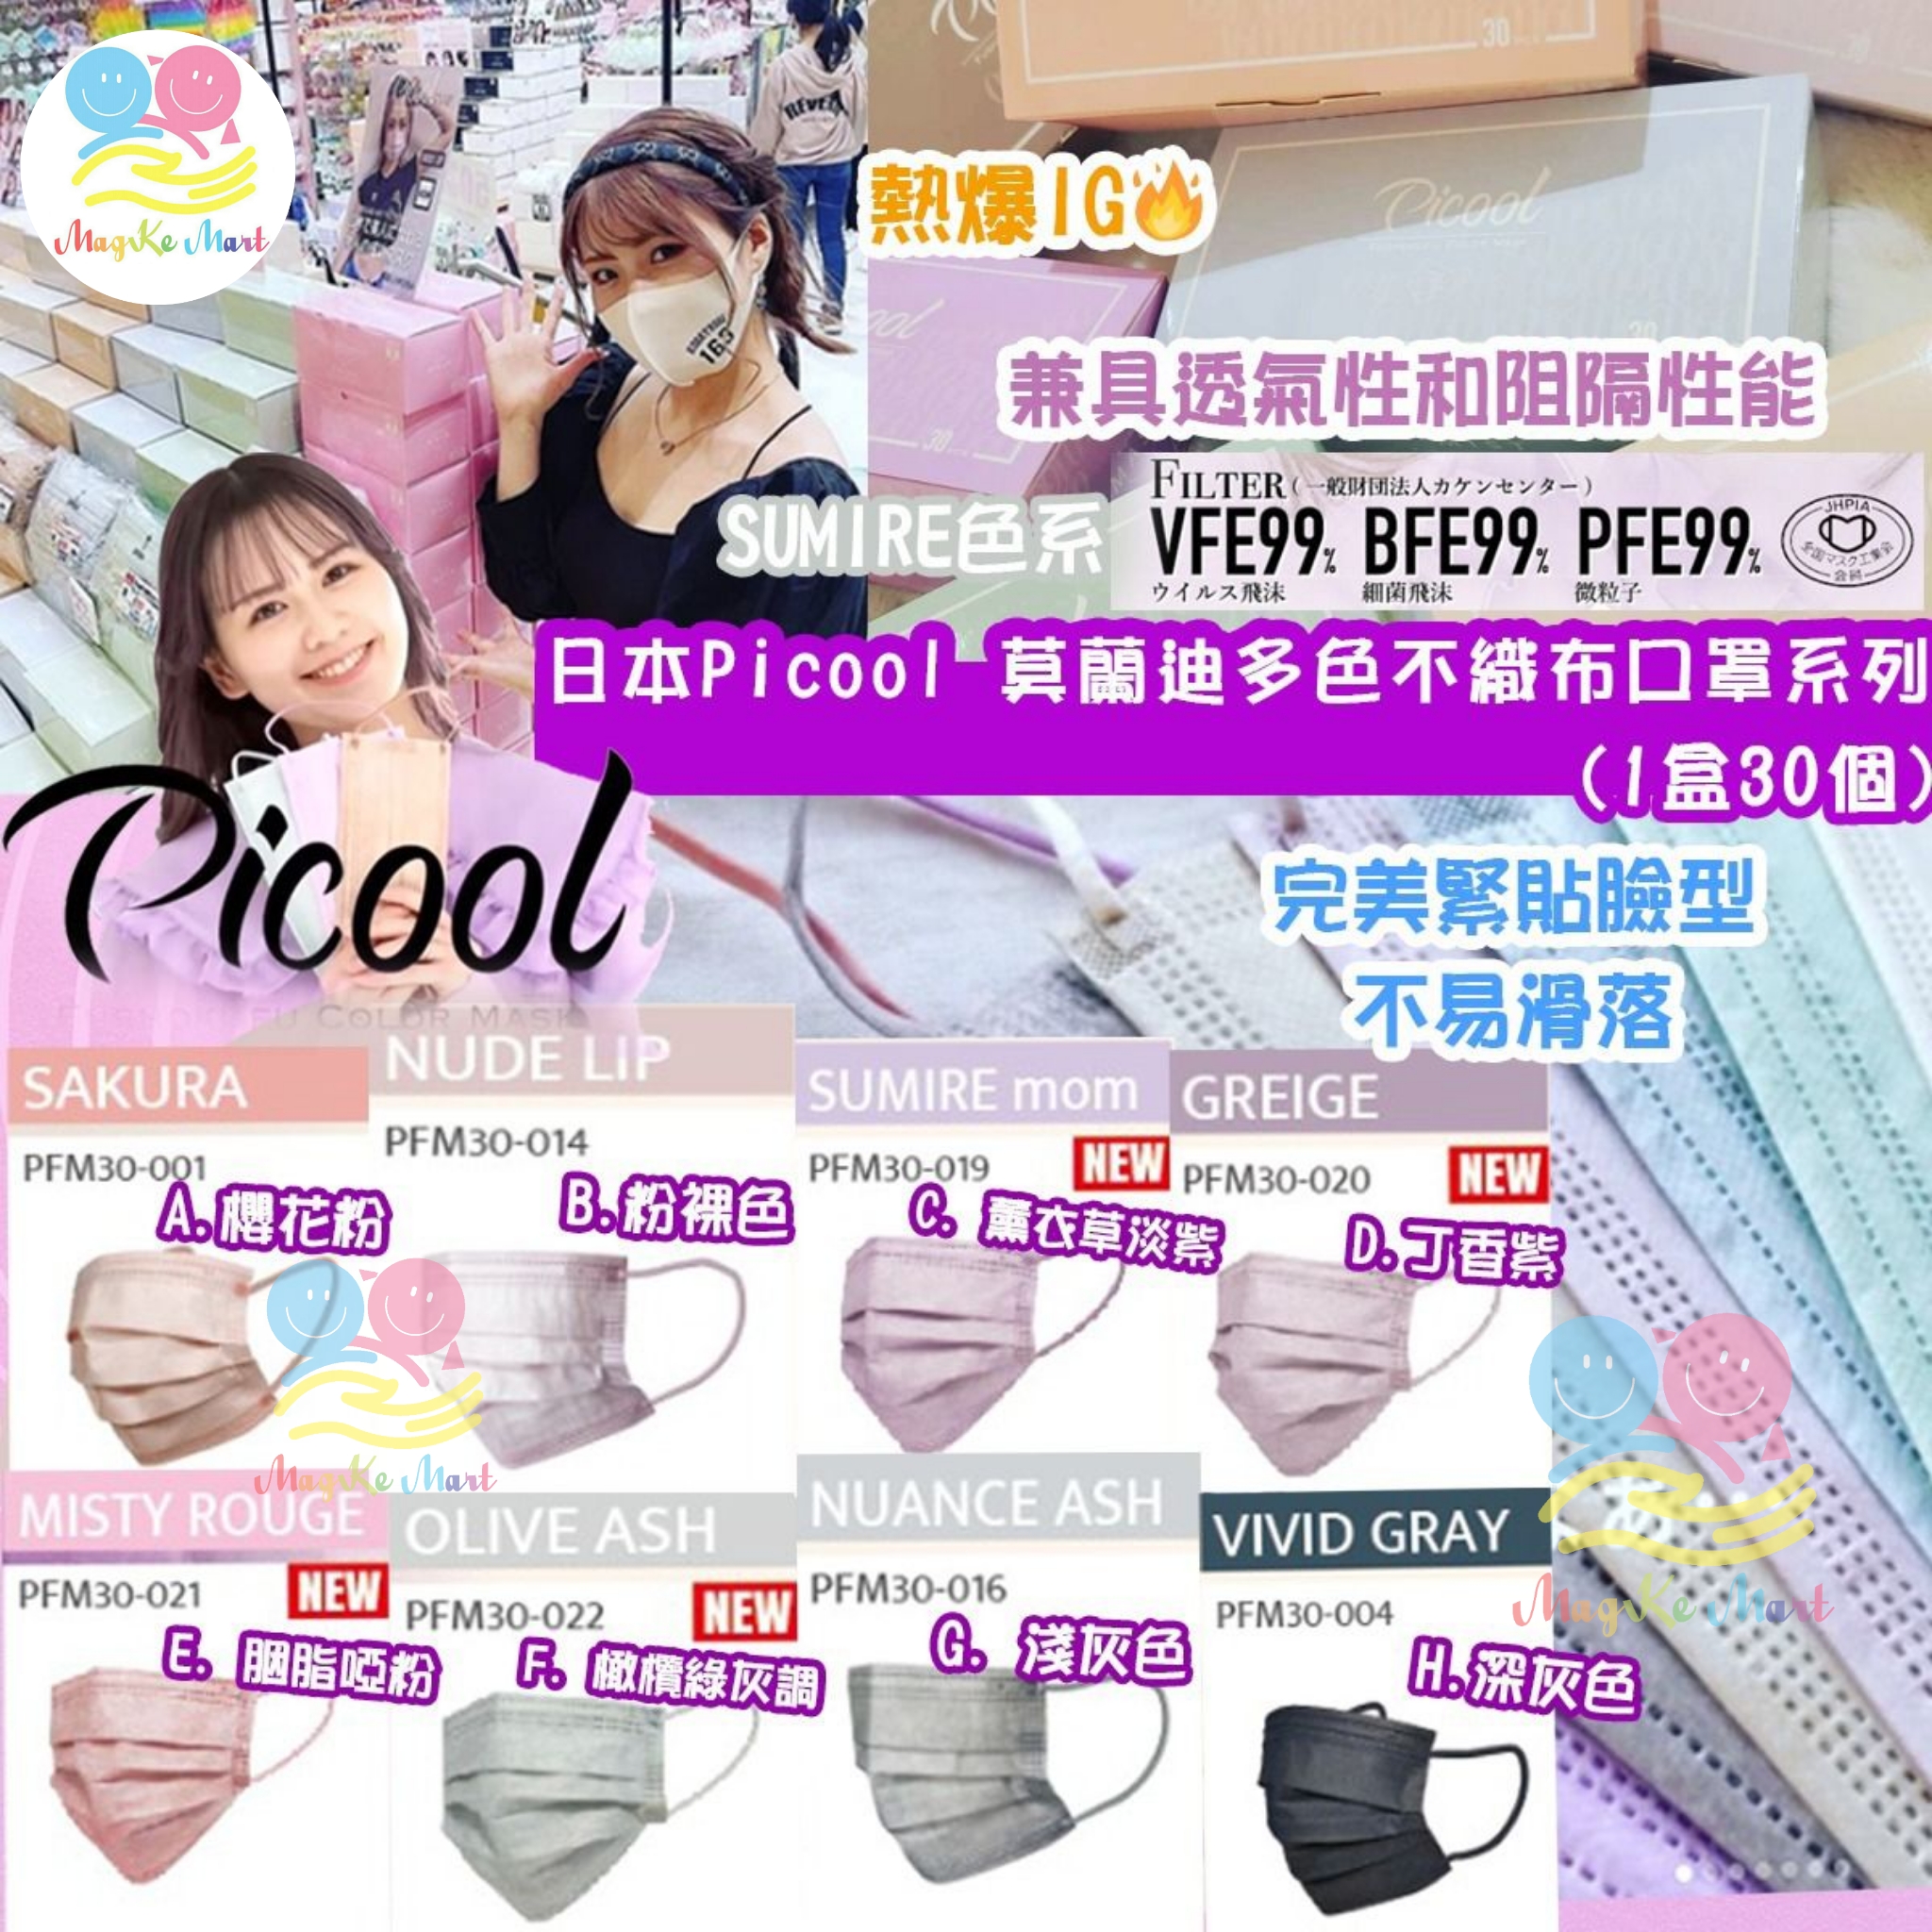 日本 Picool 莫蘭迪多色不織布口罩系列(1盒30個)(非獨立包裝) (E) MISTY ROUGE 胭脂啞粉